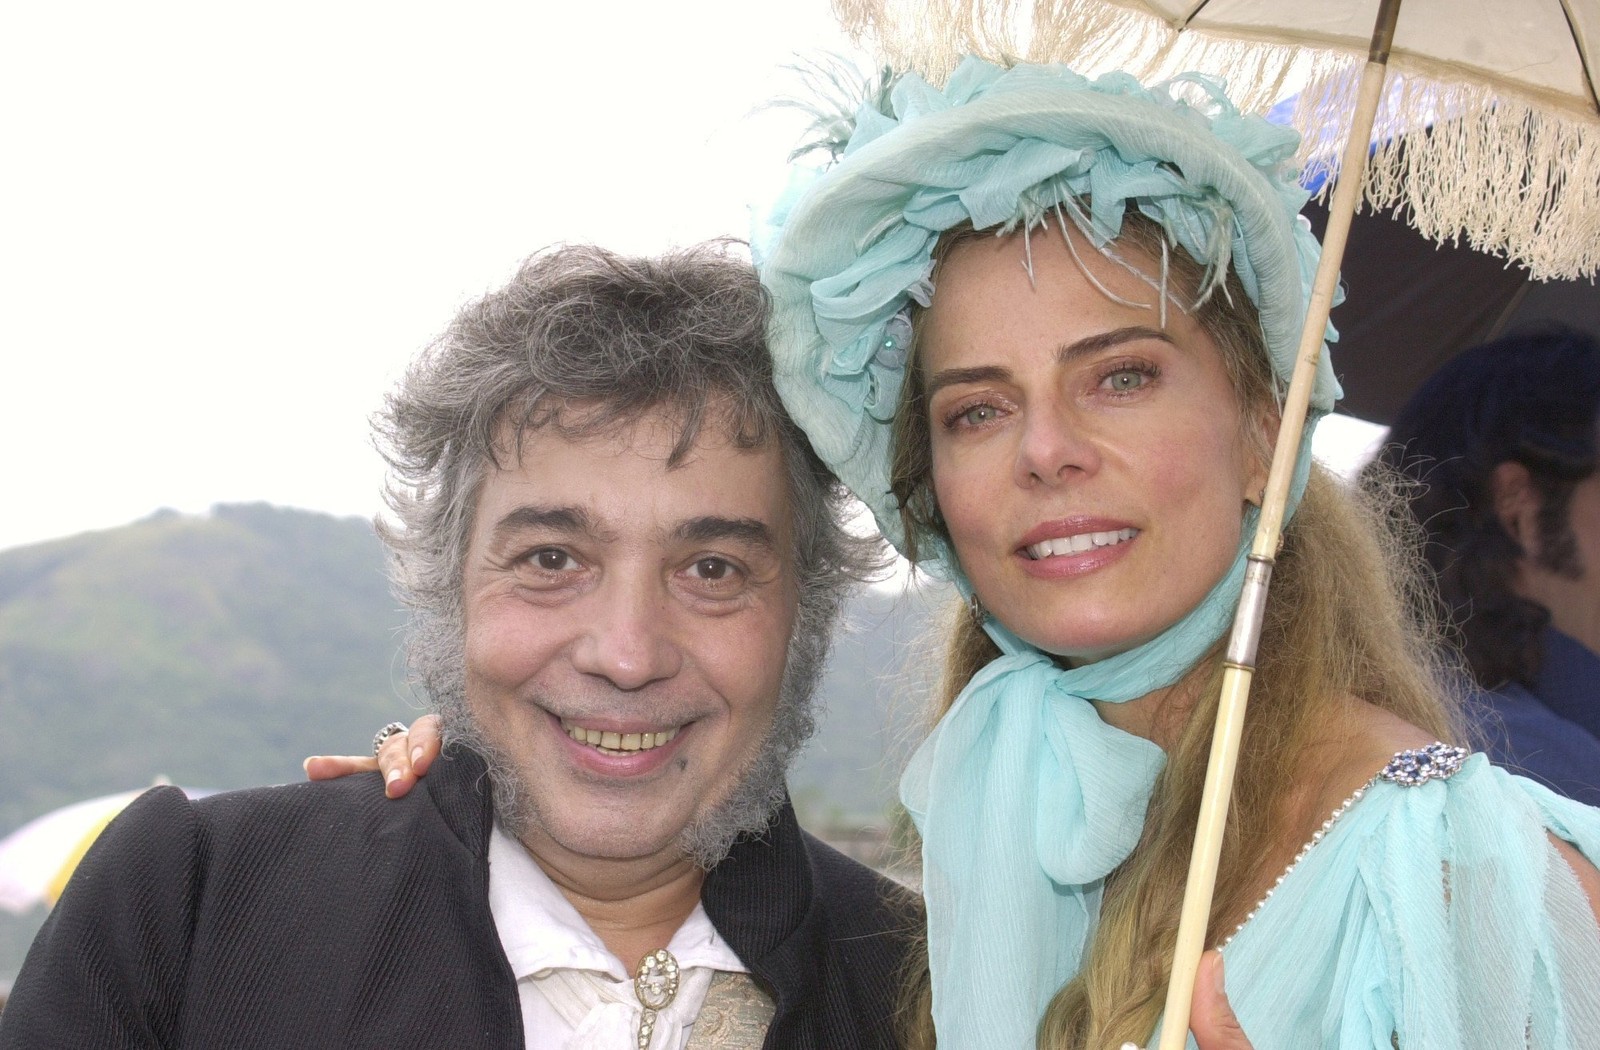 Camargo (Pedro Paulo Rangel) e sua filha Branca (Bruna Lombardi), em cenas de "O quinto dos infernos", em 2002 — Foto: Agência O Globo